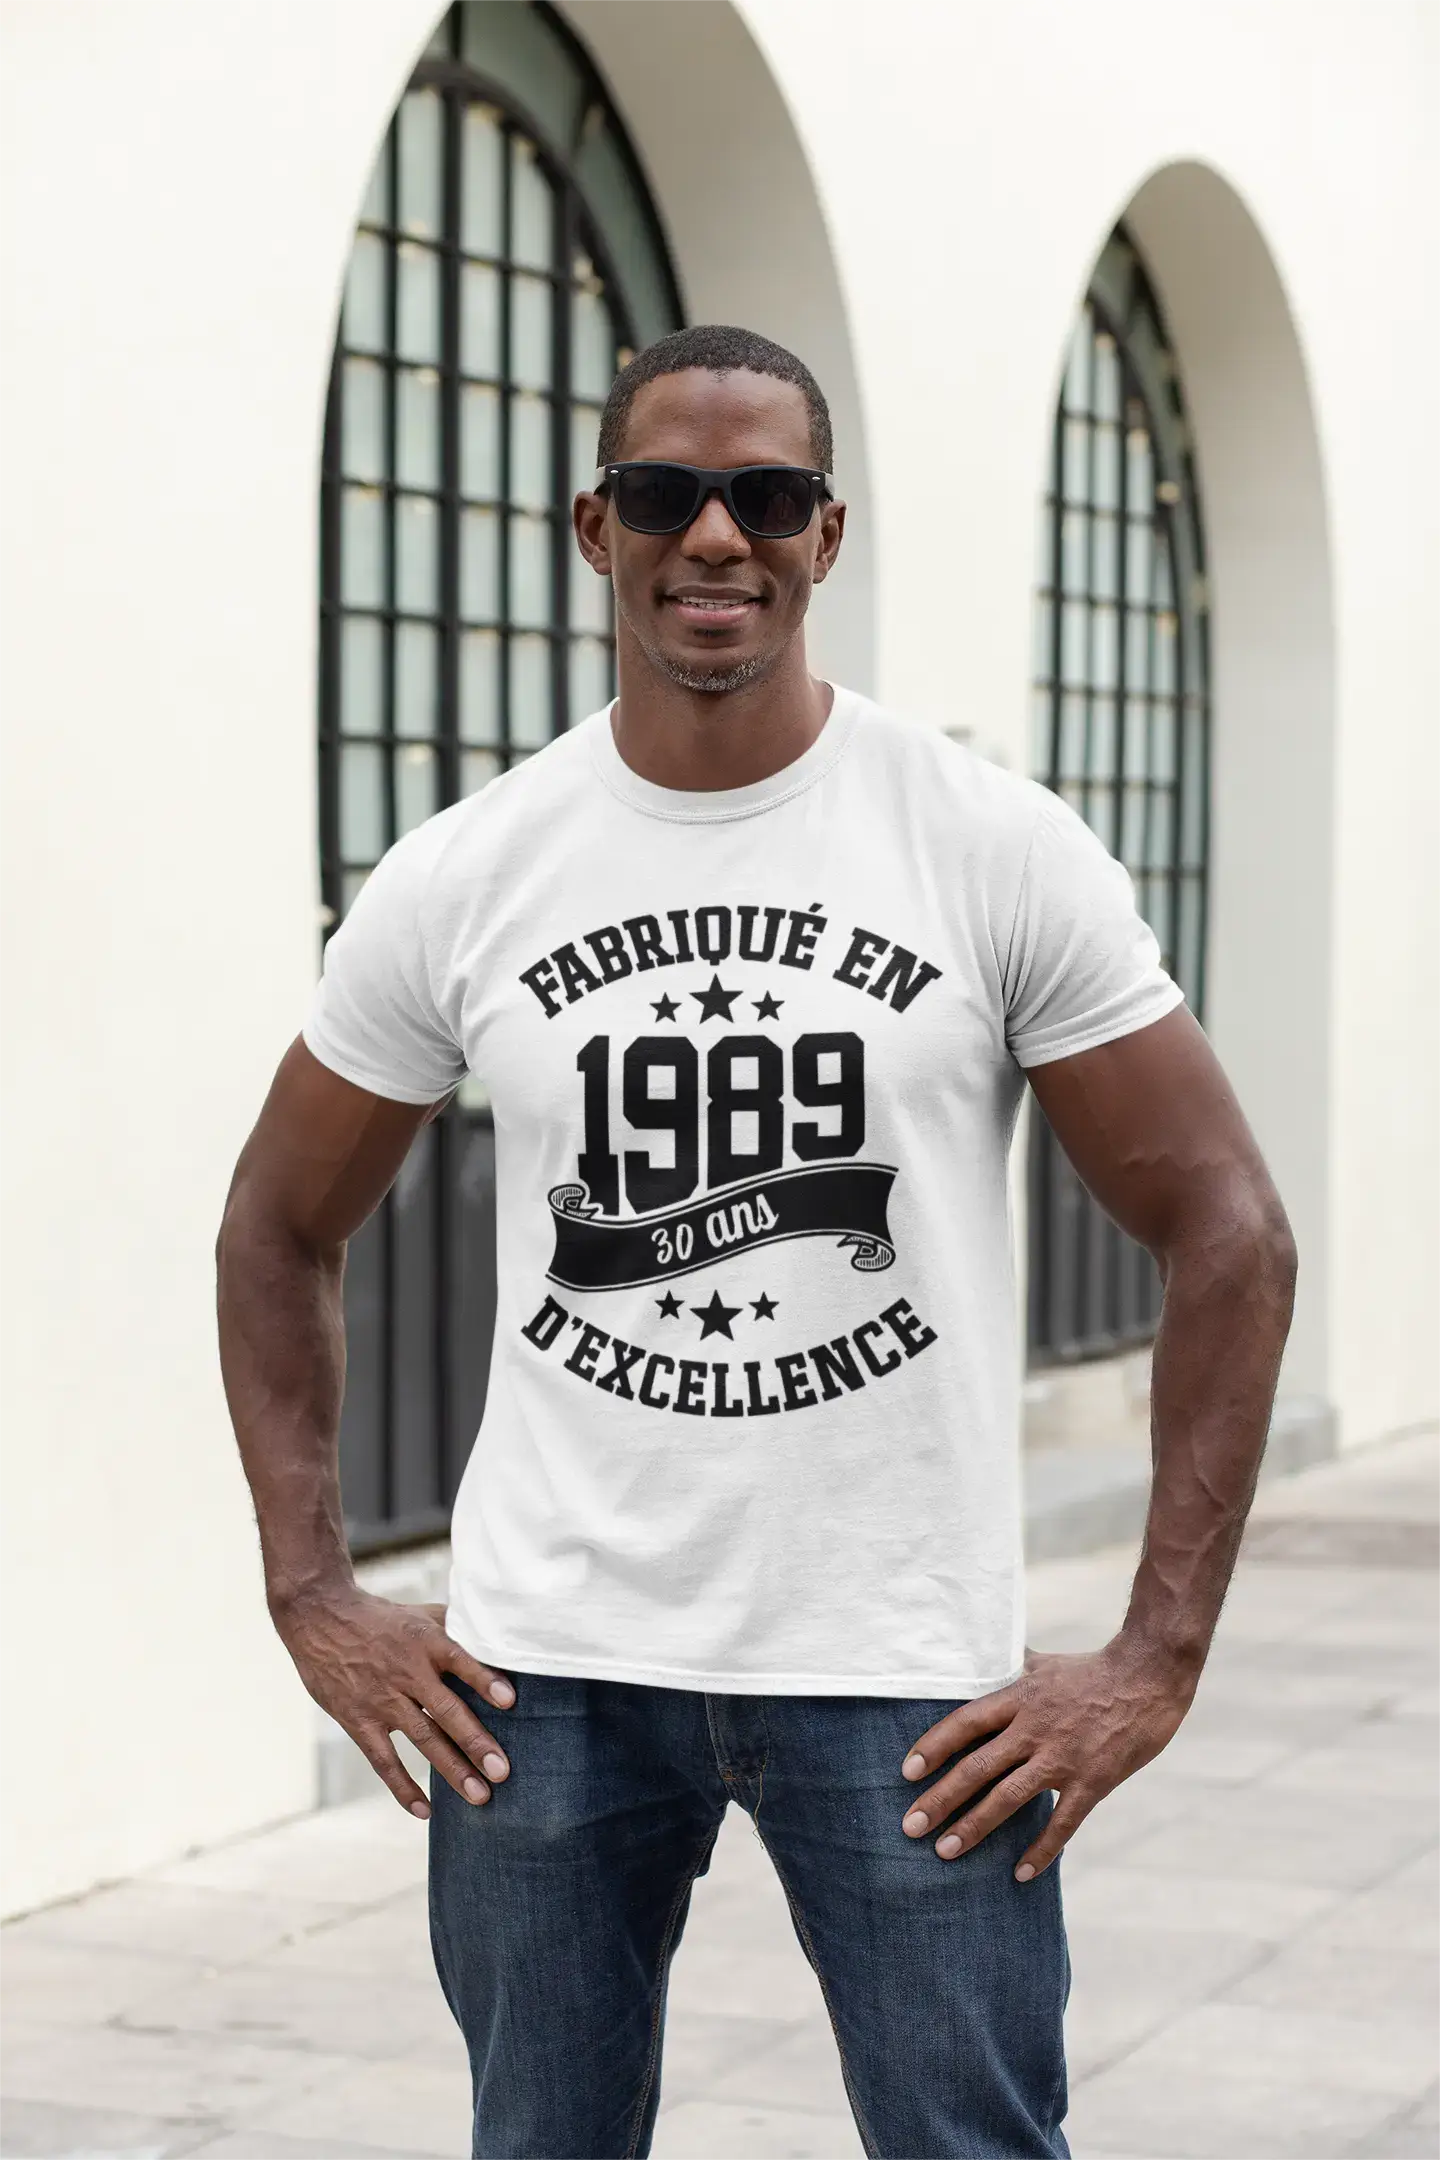 ULTRABASIC – Hergestellt im Jahr 1989, 30 Jahre alt. Geniales Unisex-T-Shirt aus weißem Chiné